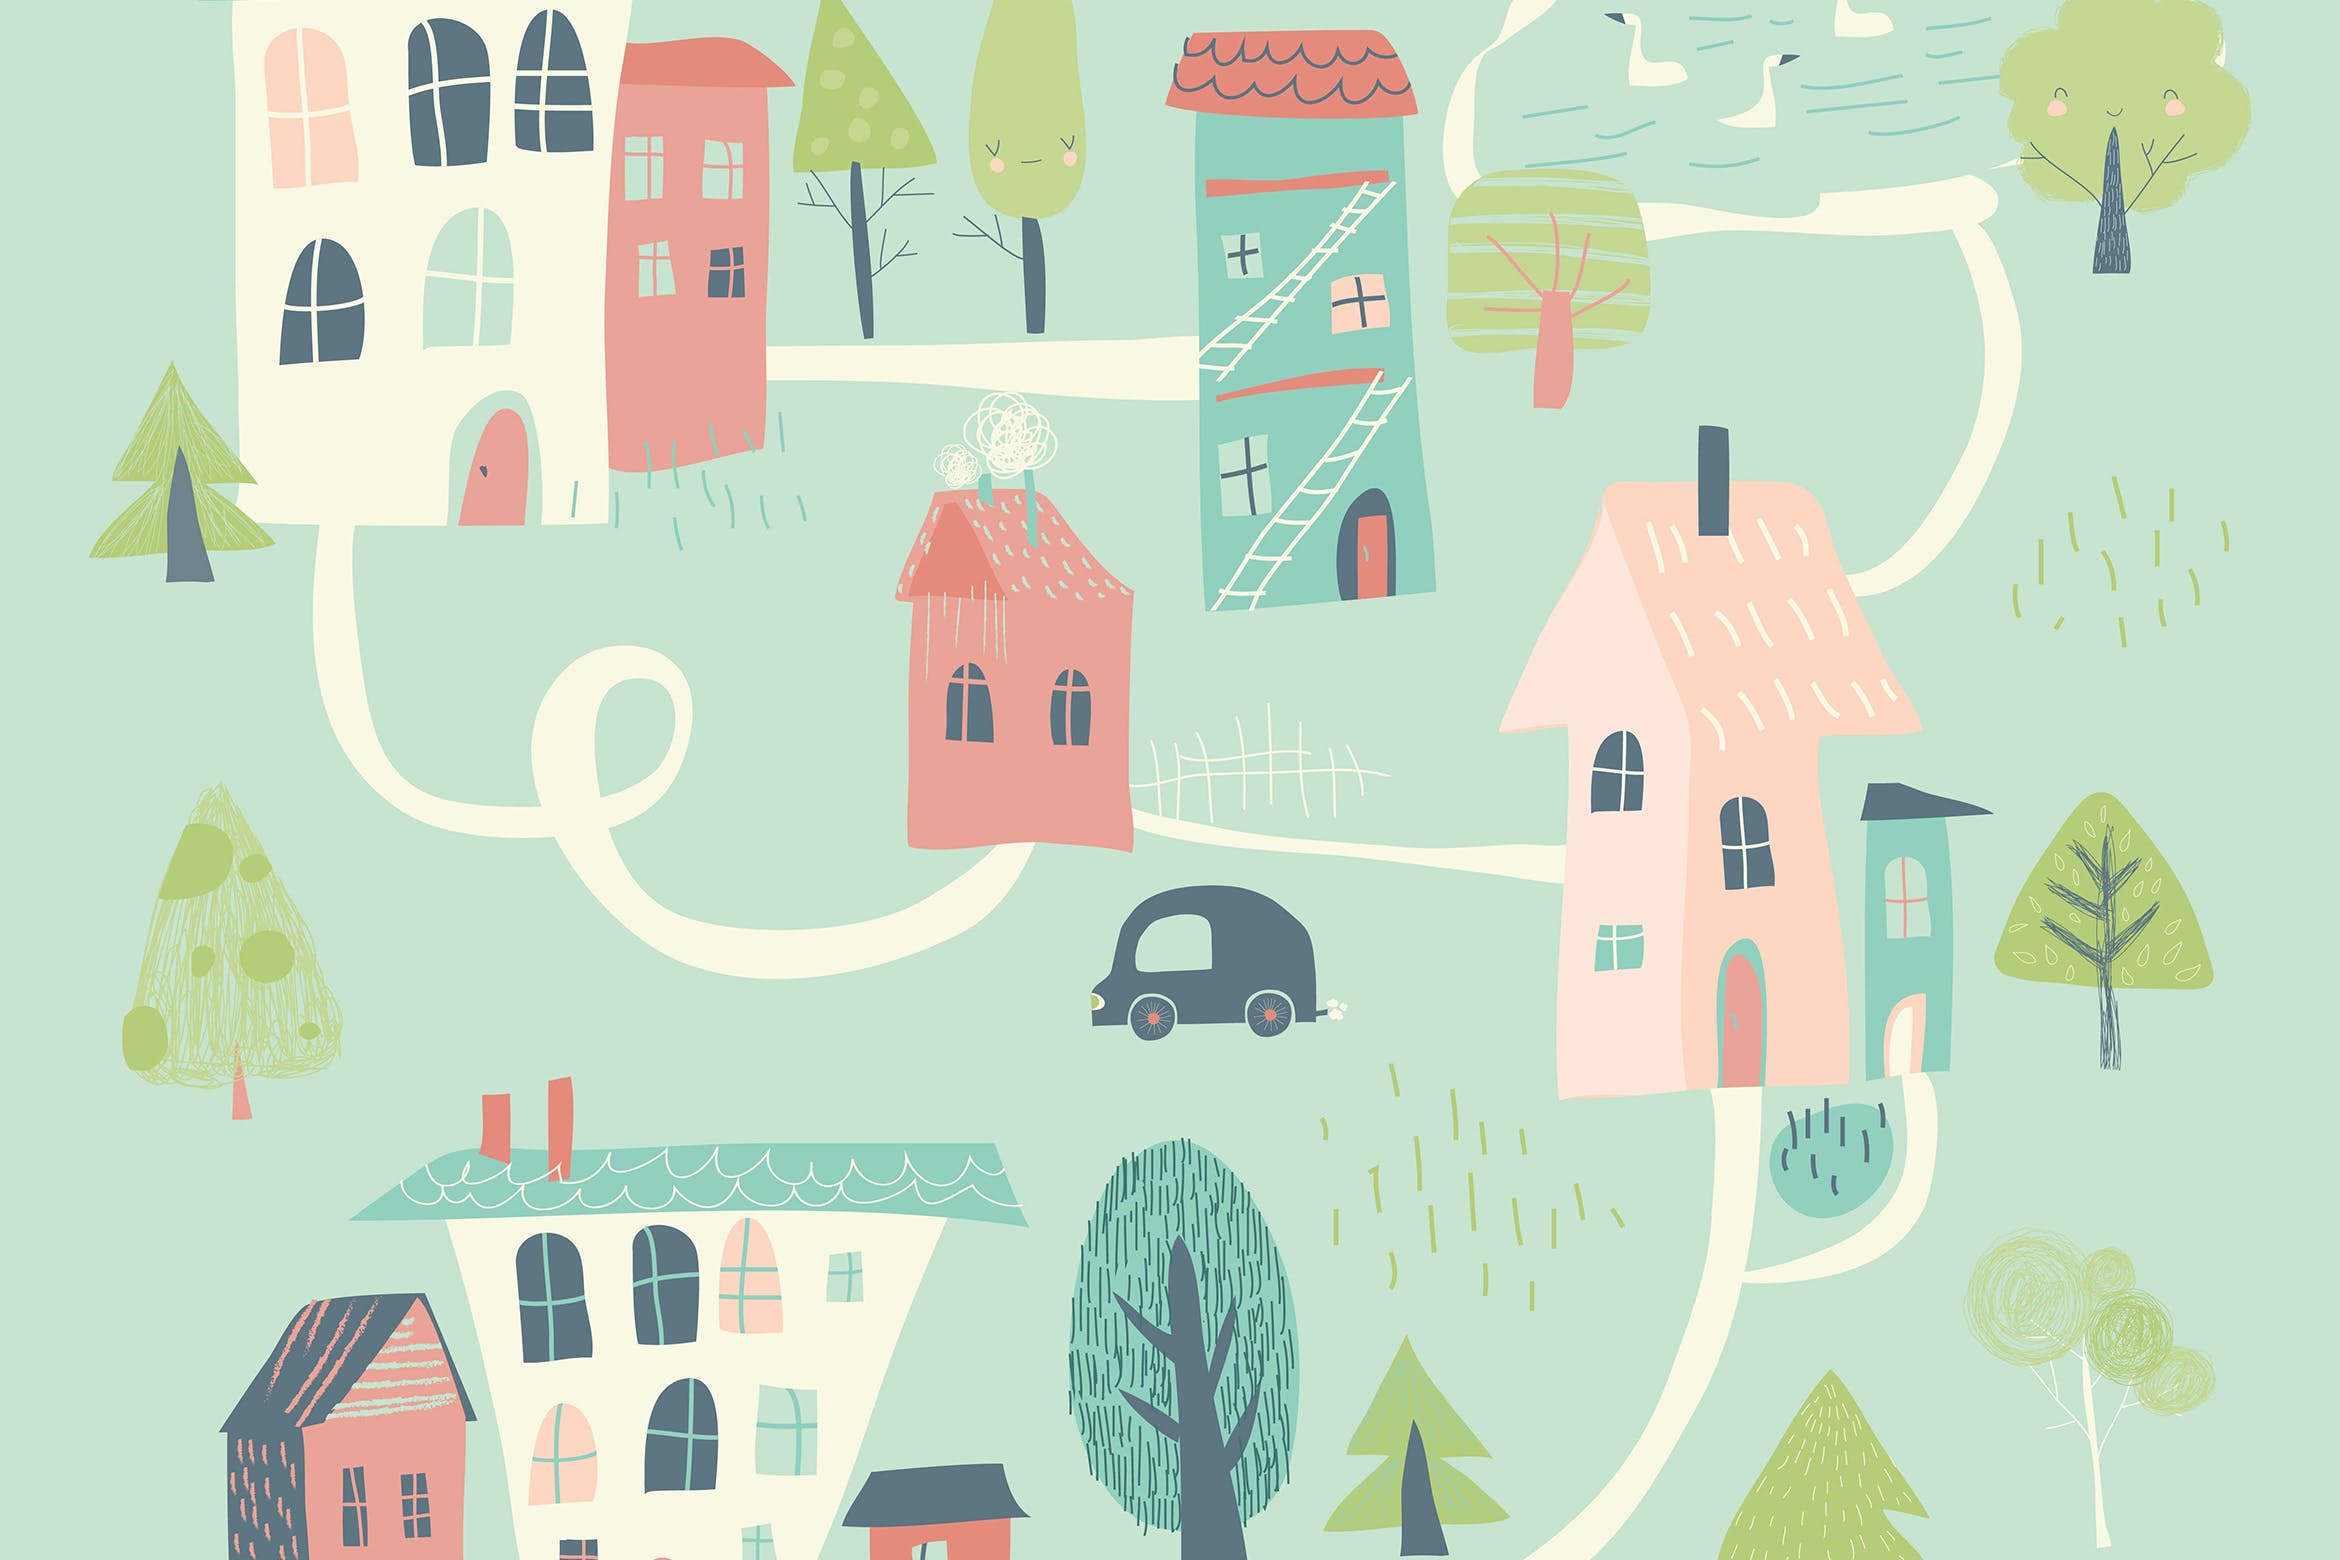 卡通风格可爱小城春天插画 Cute little town in cartoon style. Hello spring. 图片素材 第1张